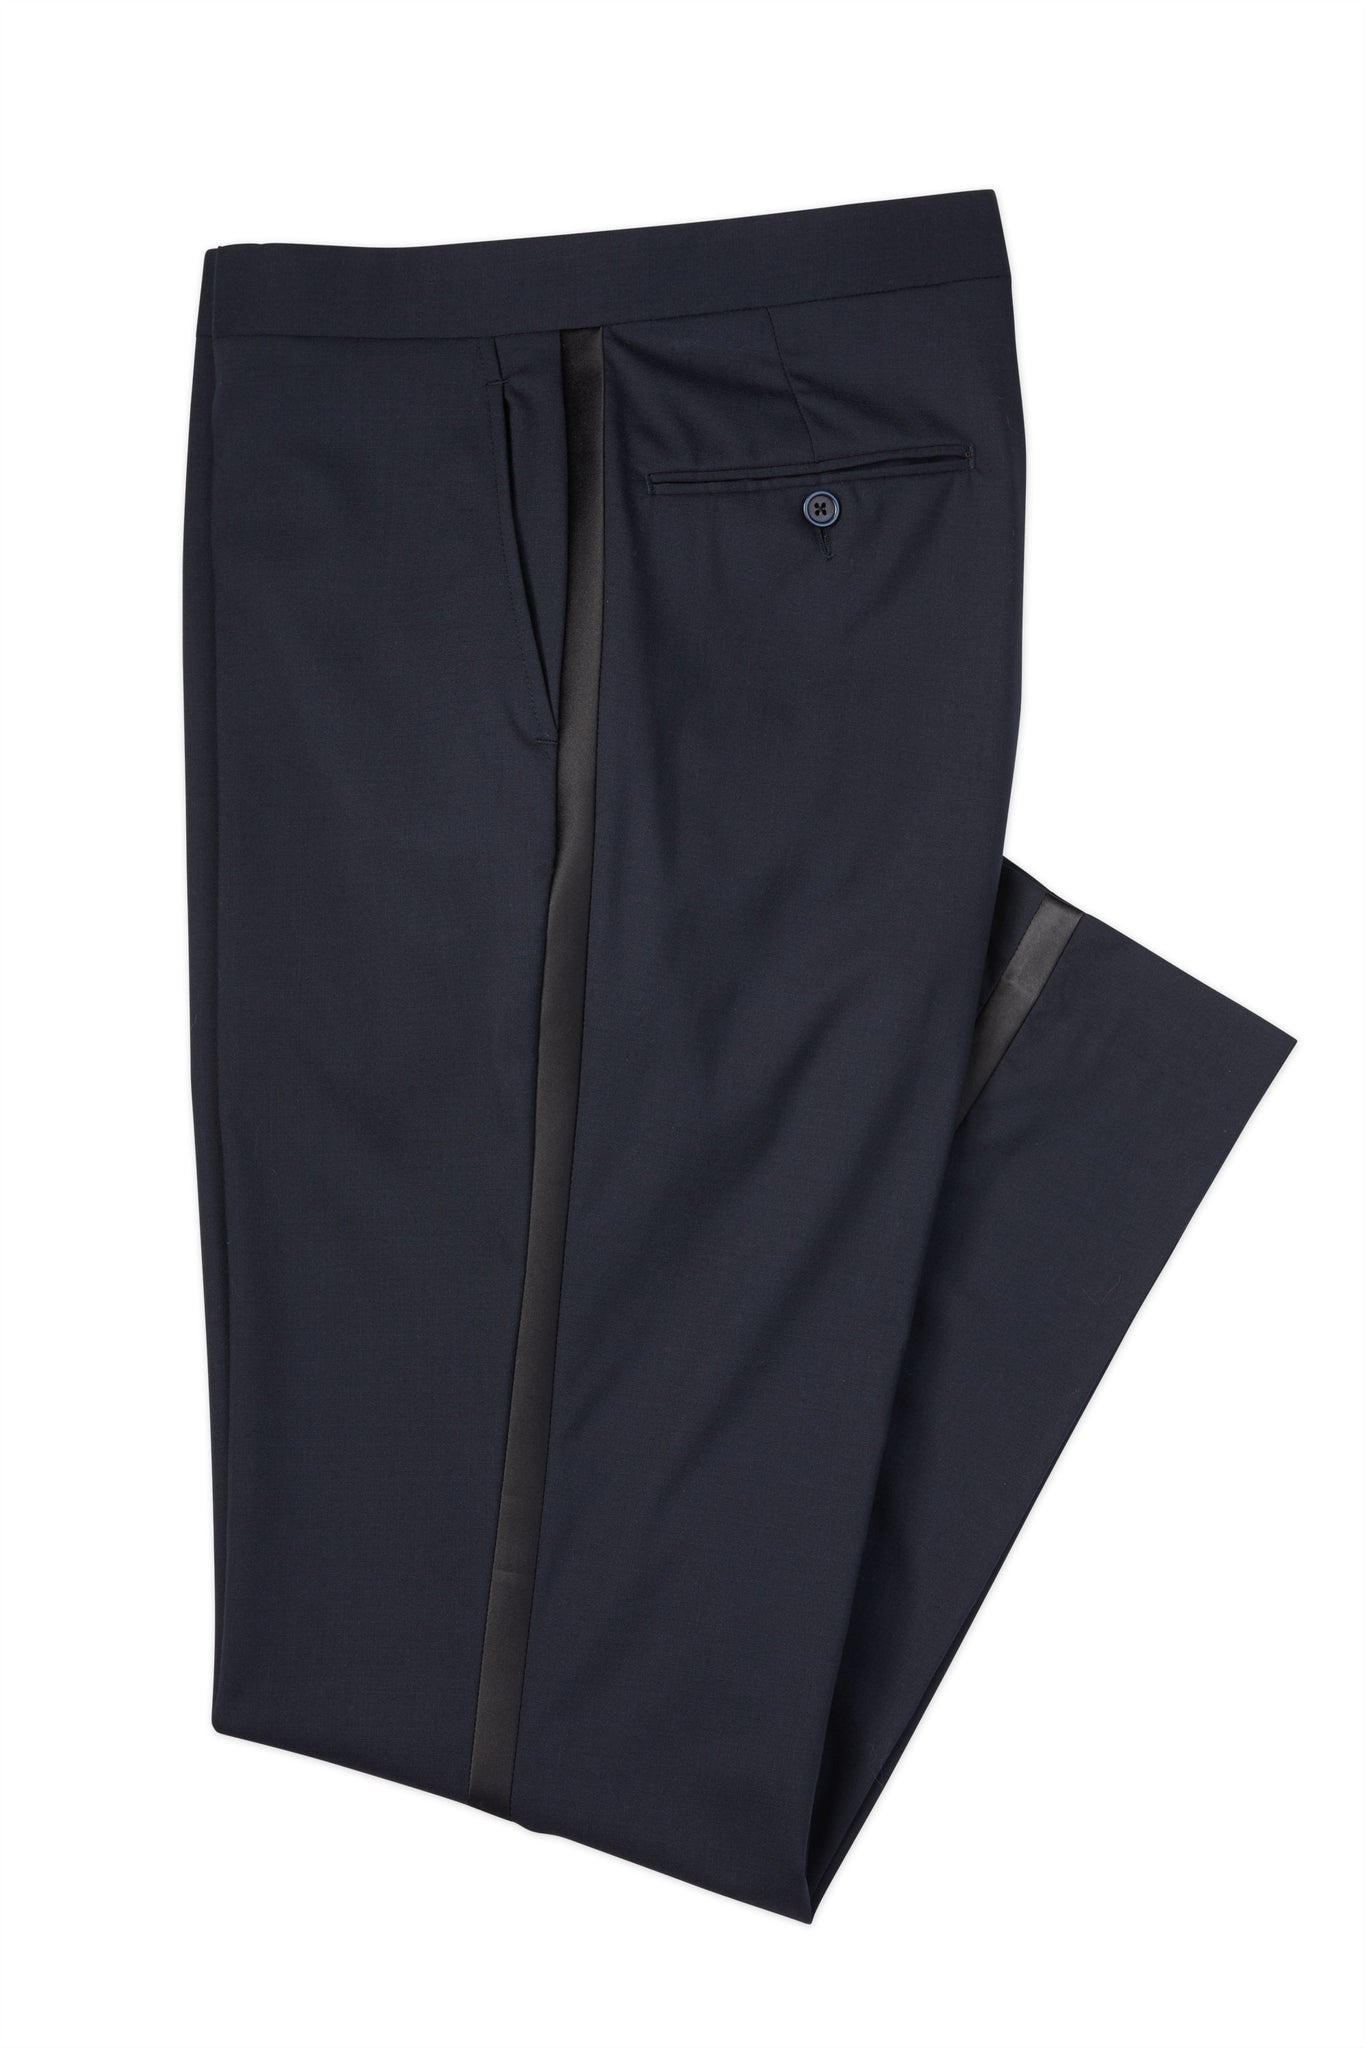 Murano Wardrobe Essentials Alex Slim Fit TekFit Waistband Suit Separates Flat  Front Dress Pants | Dillard's